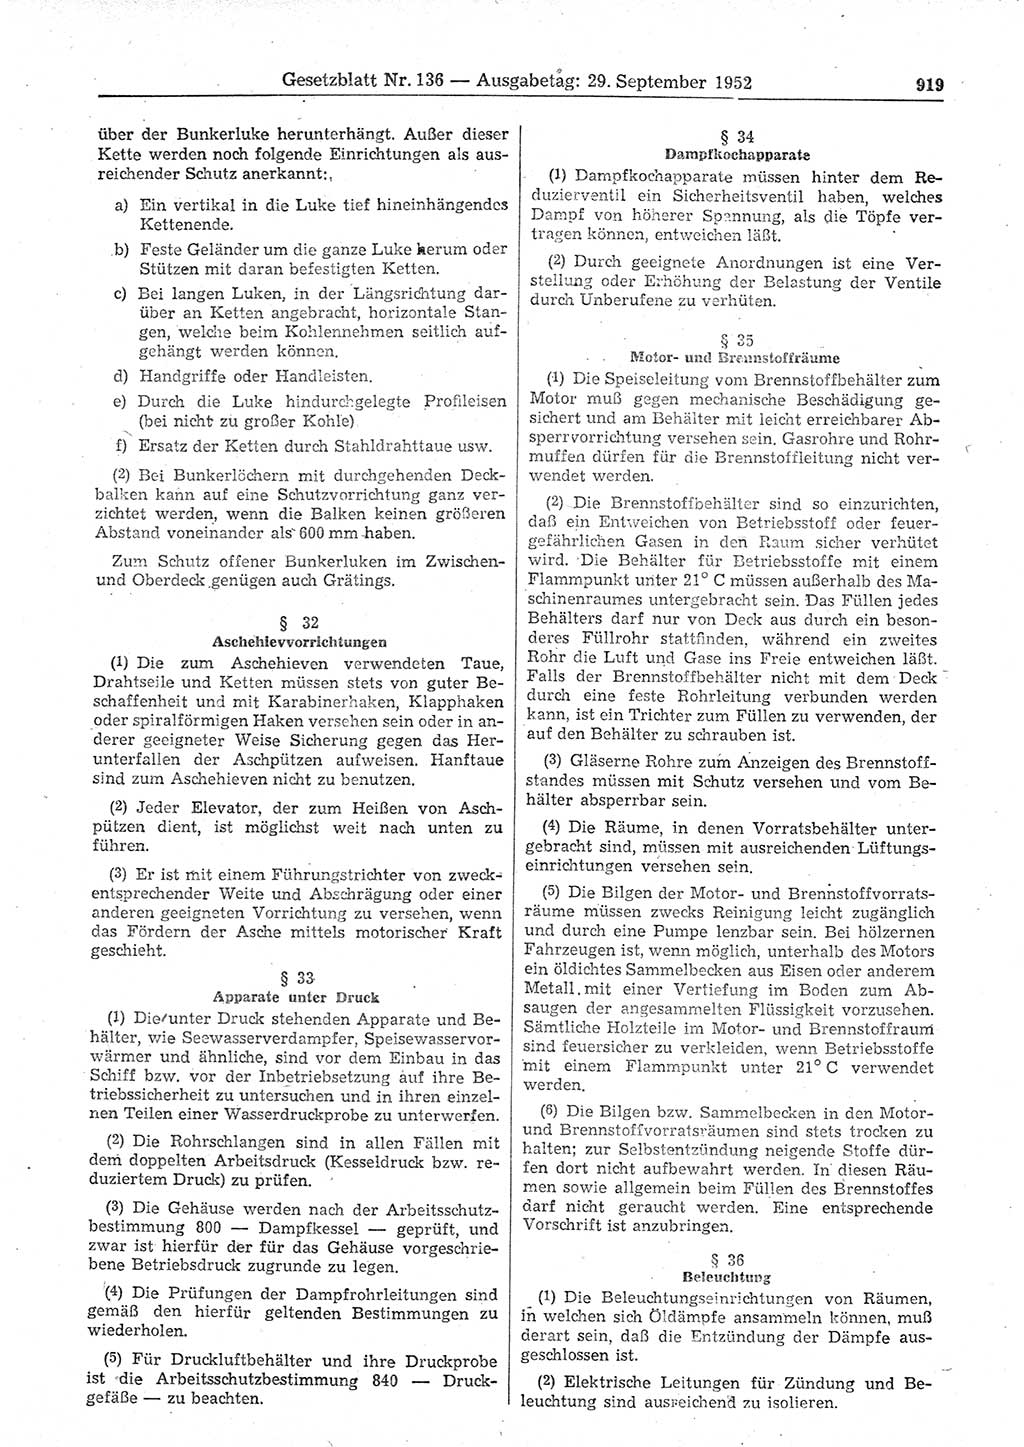 Gesetzblatt (GBl.) der Deutschen Demokratischen Republik (DDR) 1952, Seite 919 (GBl. DDR 1952, S. 919)